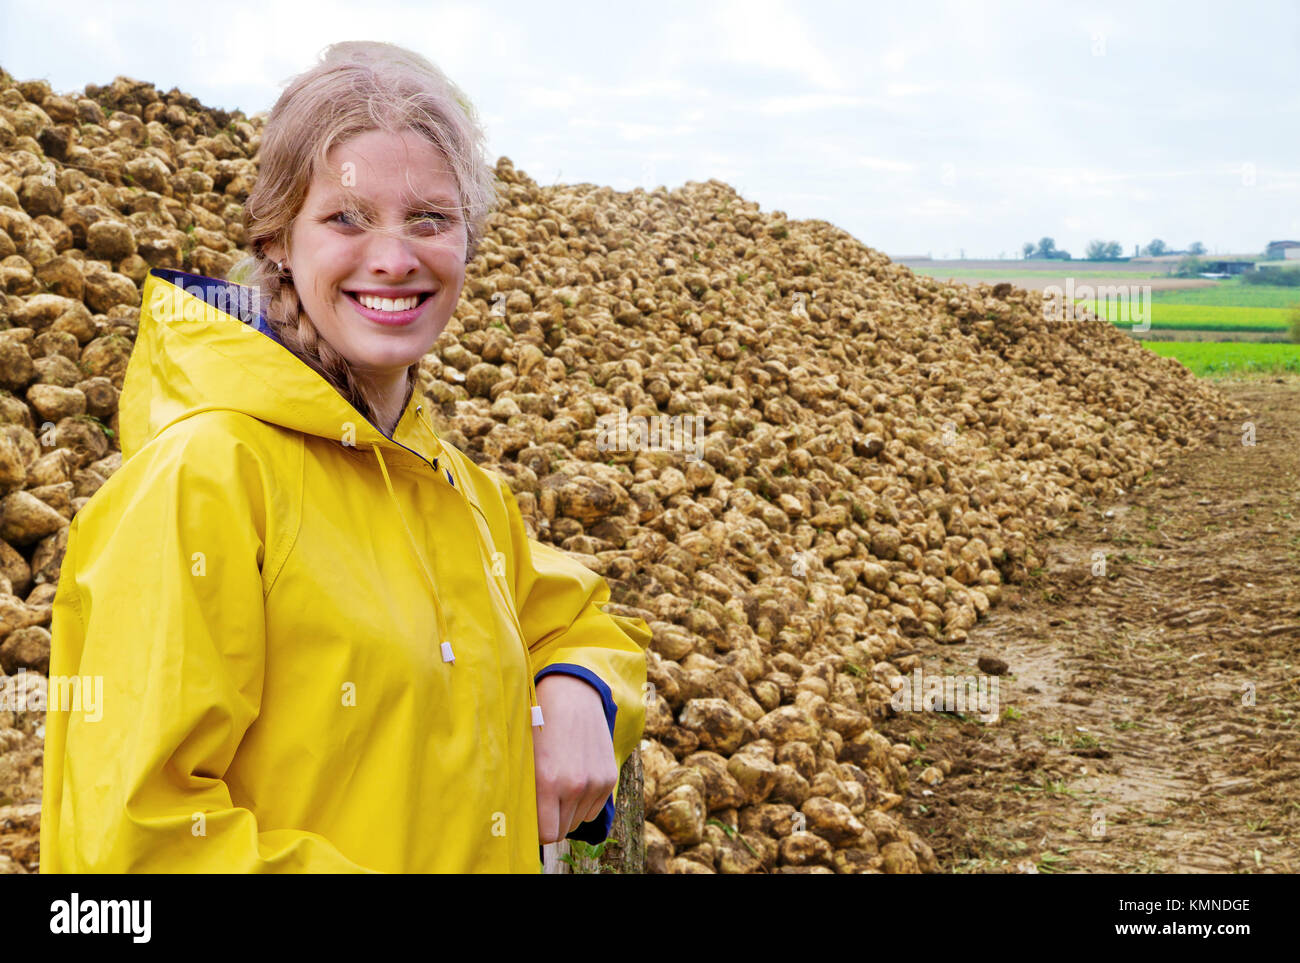 Junge Landwirt vor einem Haufen mit Zuckerrüben Stockfoto